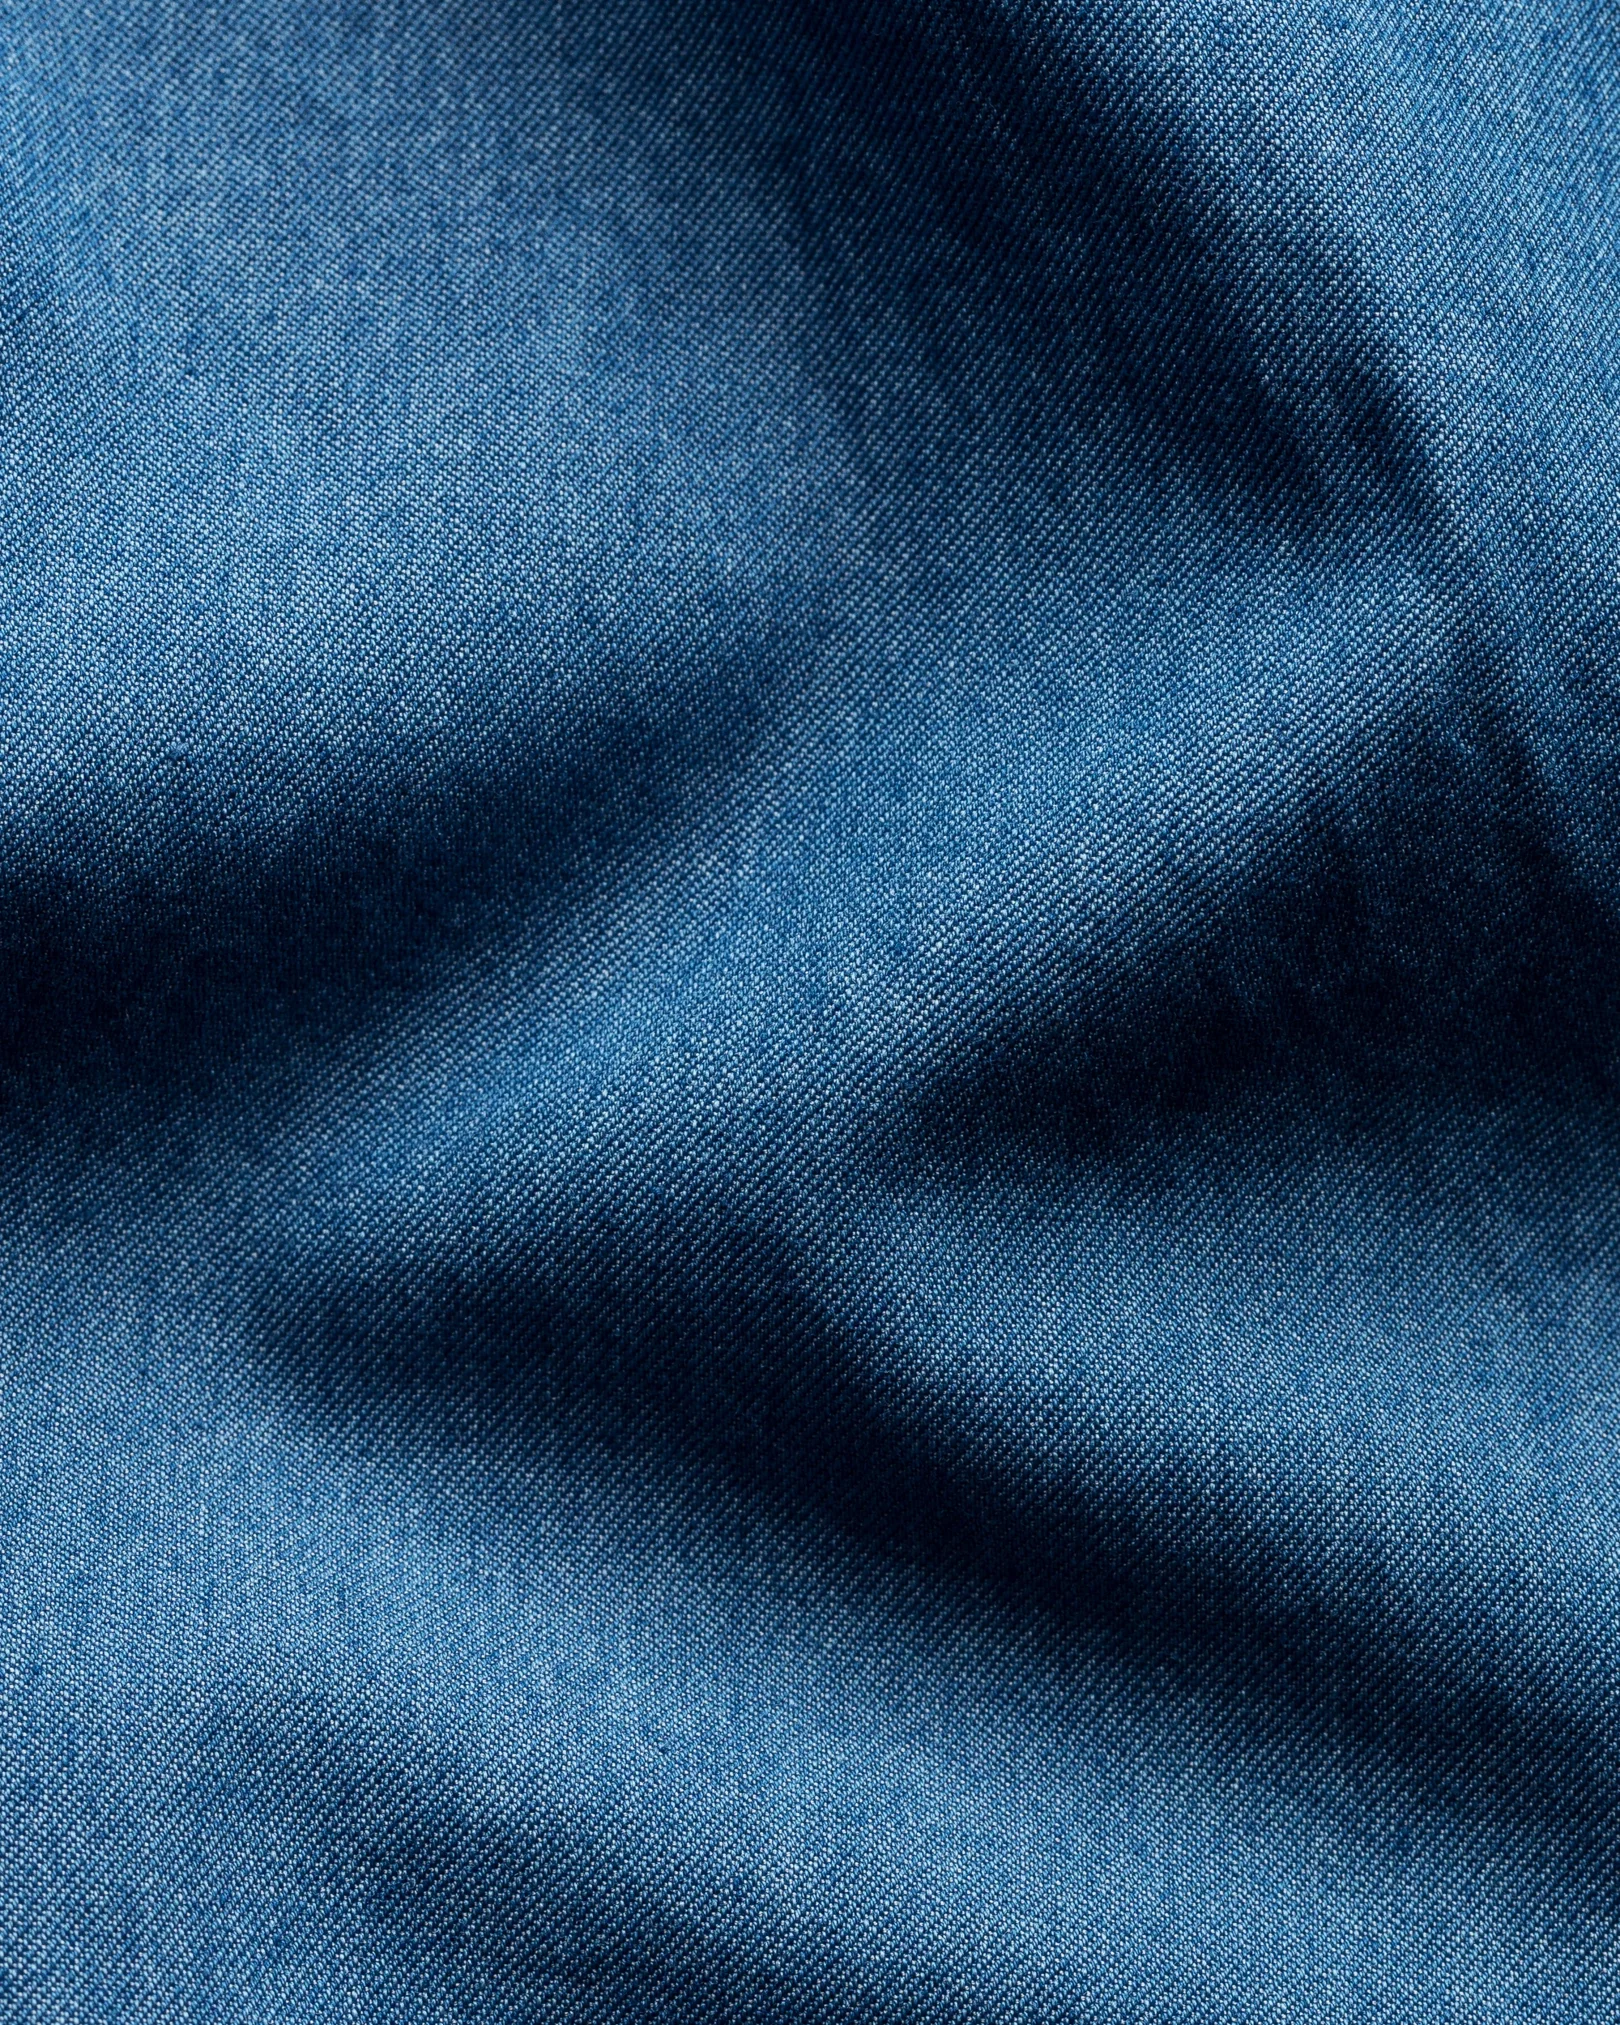 Eton - dark blue indigo wide spread collar